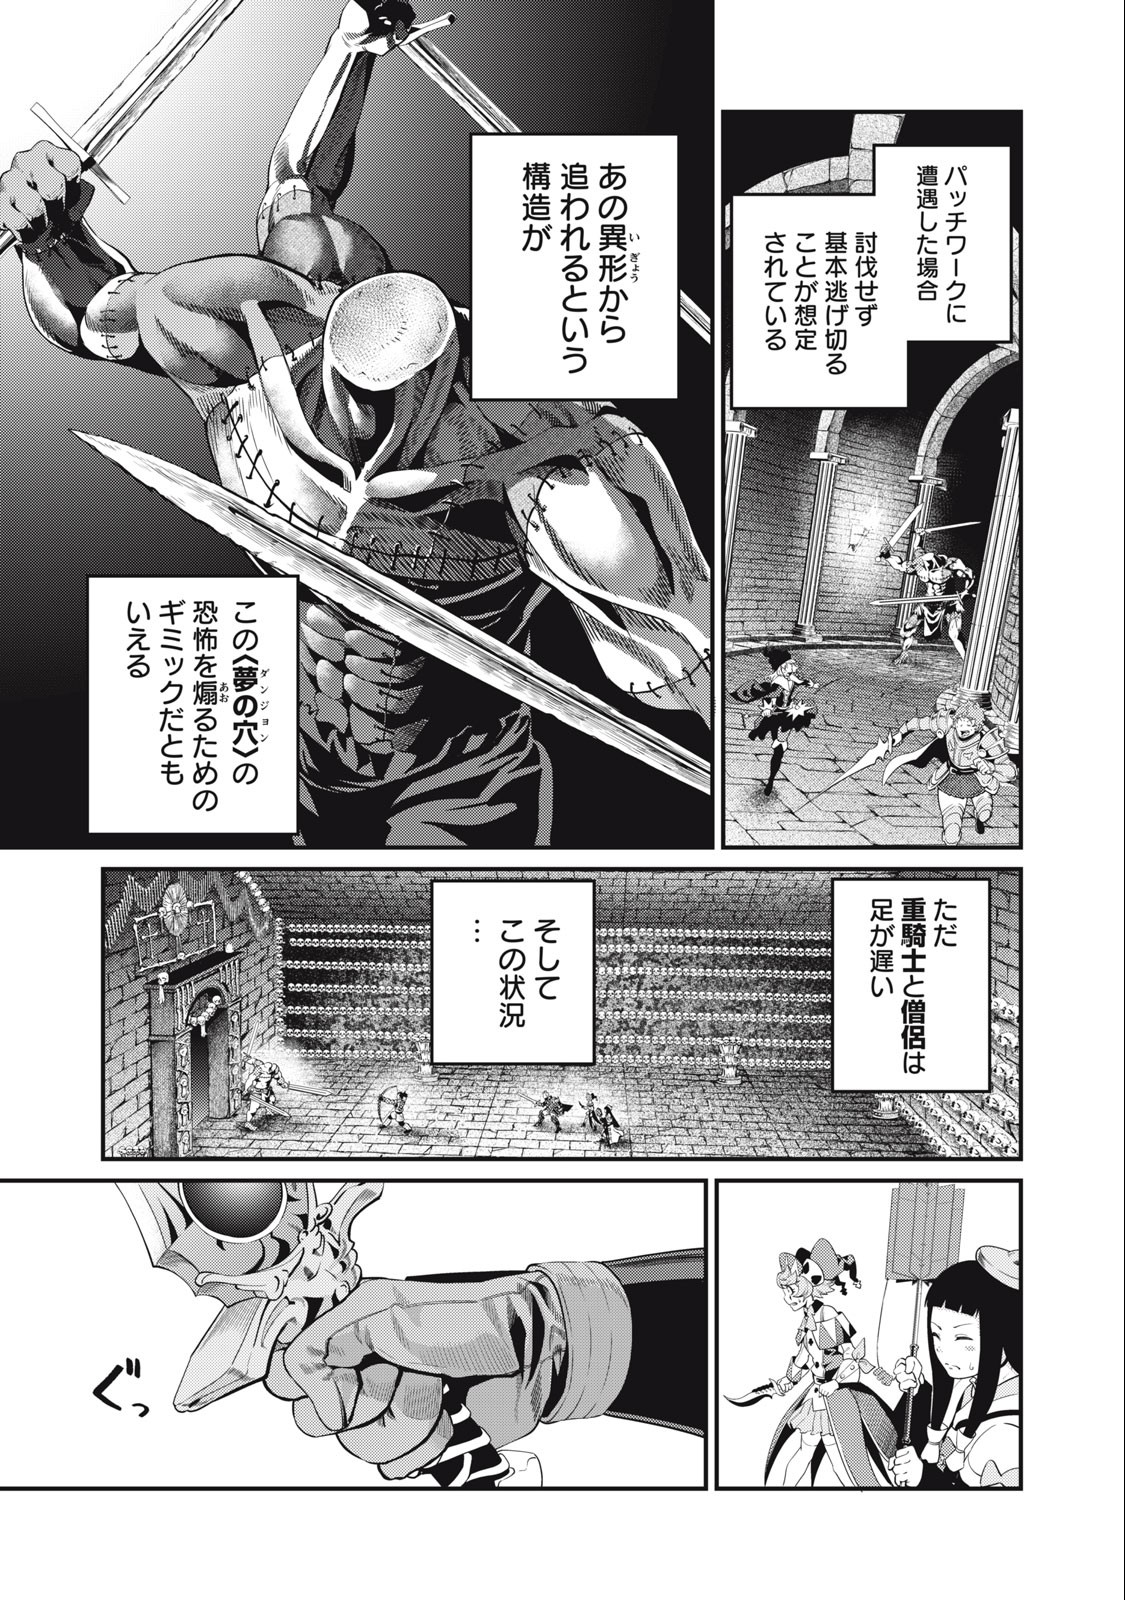 追放された転生重騎士はゲーム知識で無双する 第53話 - Page 9